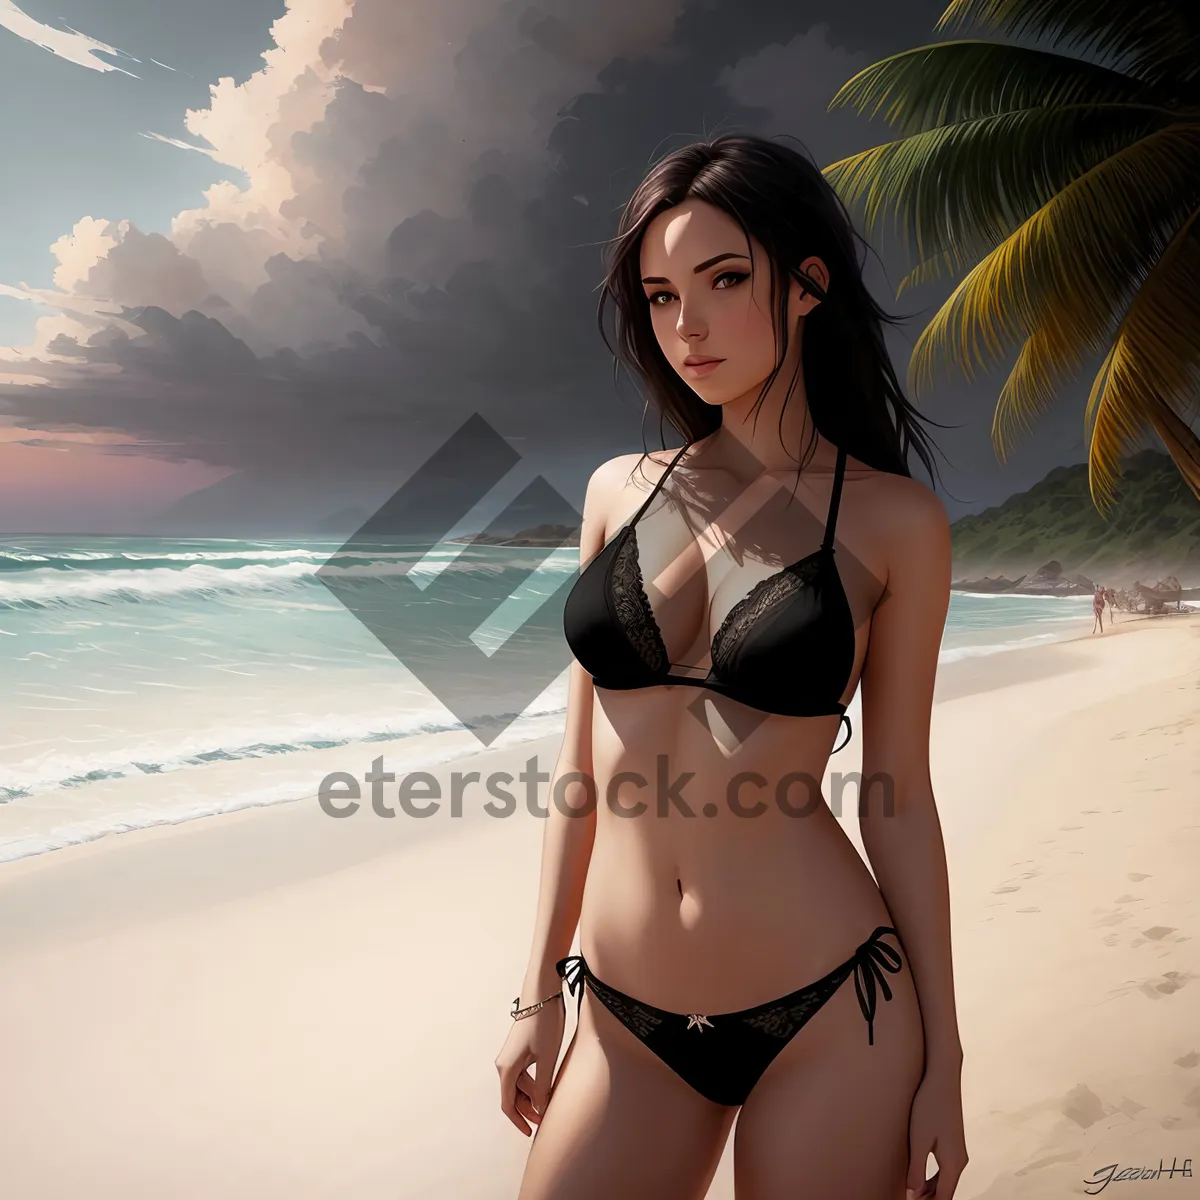 Picture of Seductive Beach Babe in Bikini - Alluring Swimwear Fashion